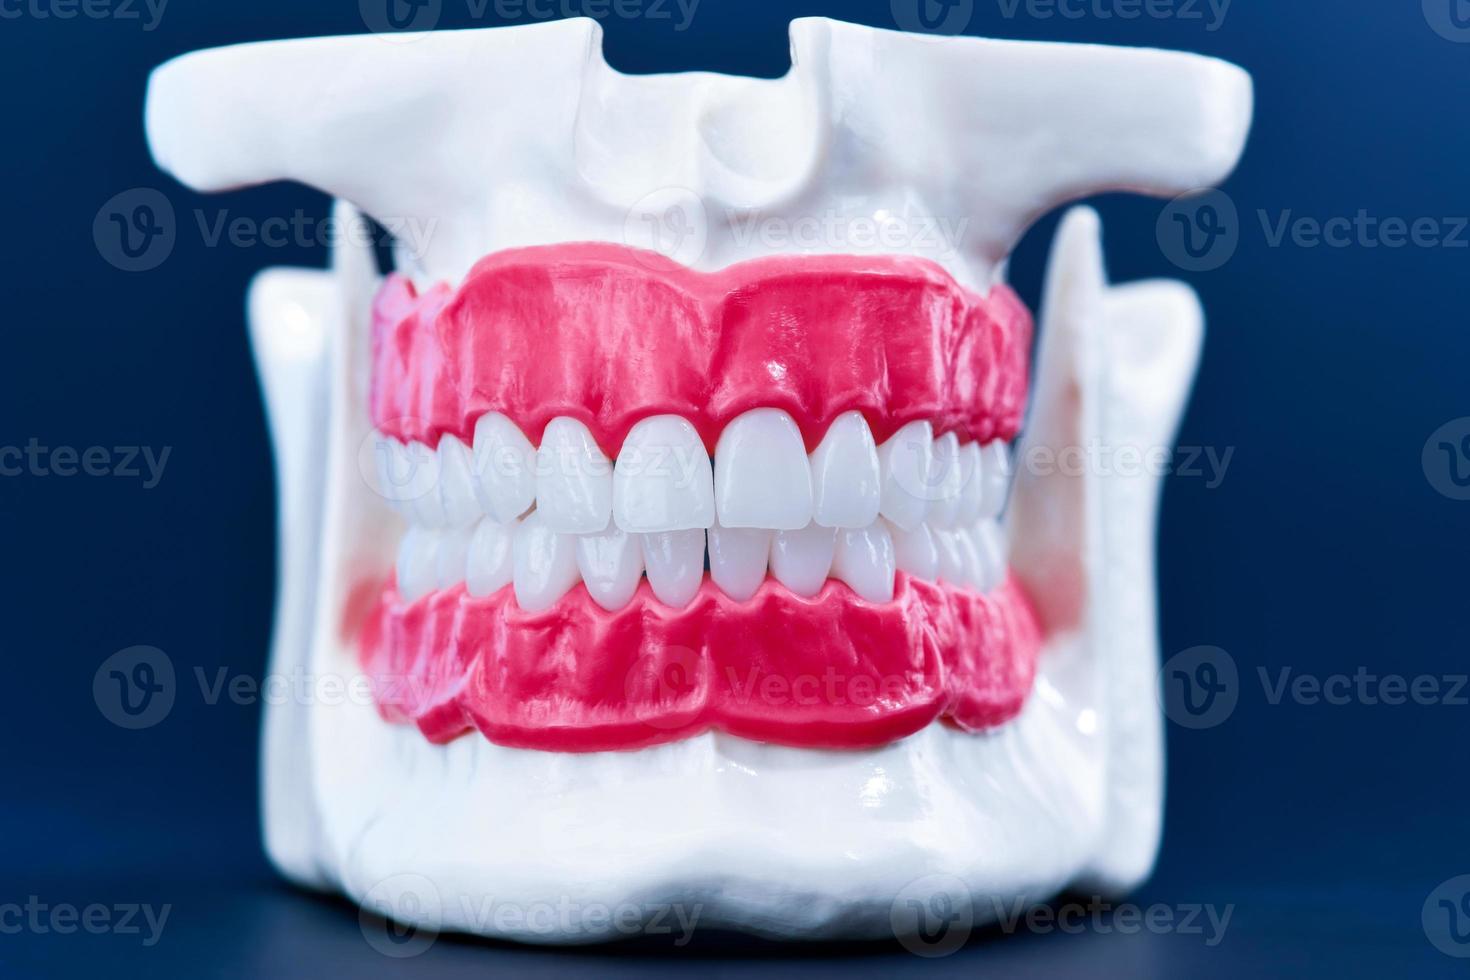 umano mascella con denti e gengive anatomia modello foto